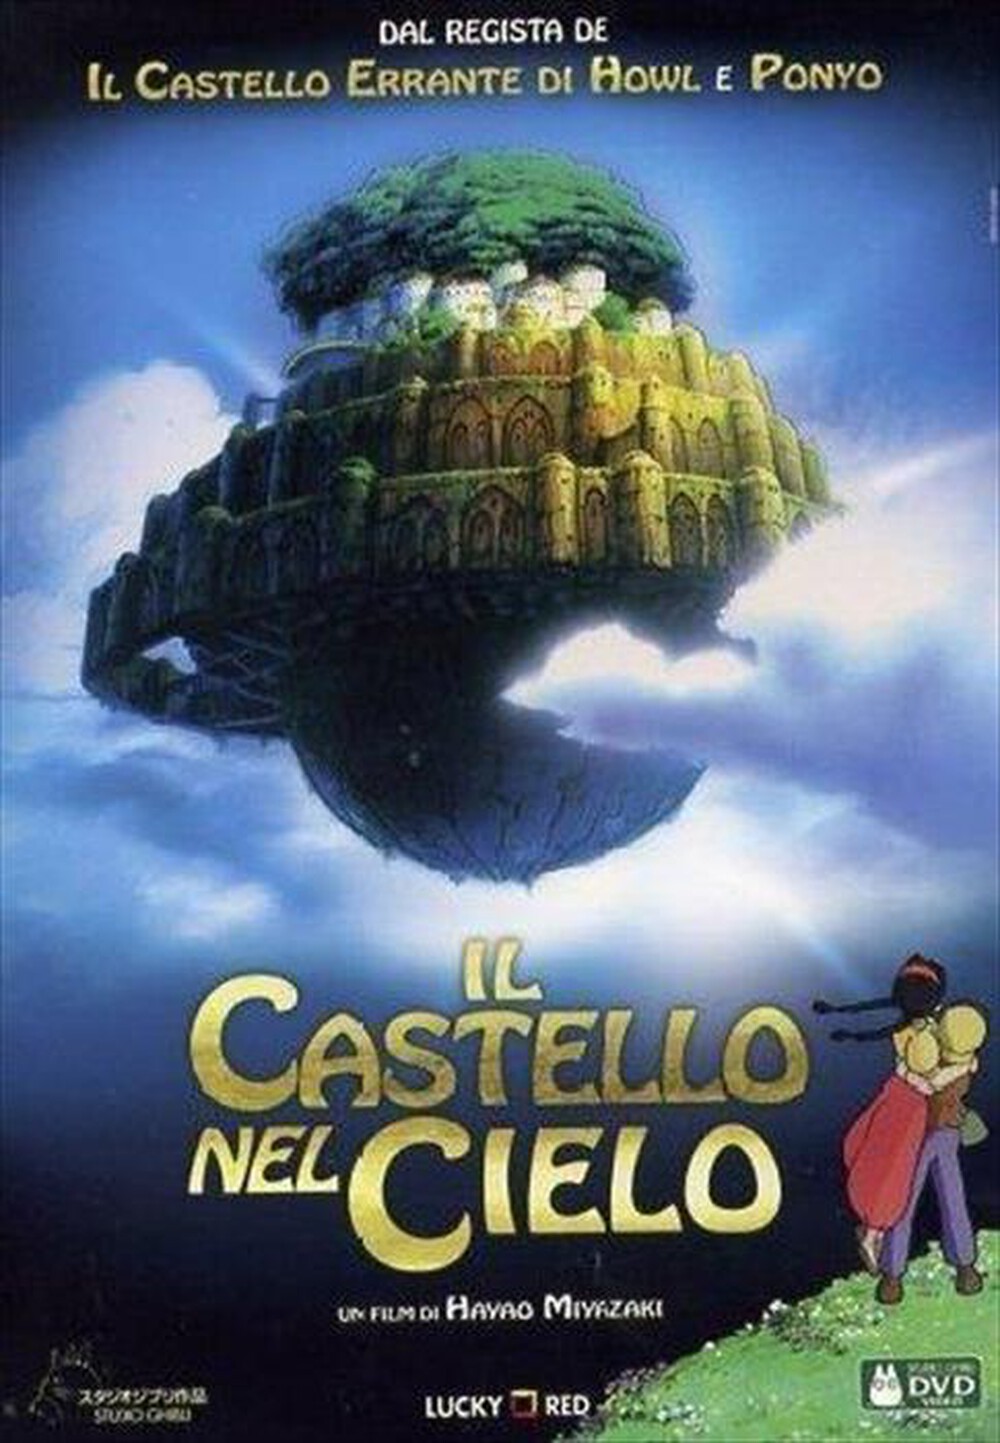 "WARNER HOME VIDEO - Castello Nel Cielo (Il)"